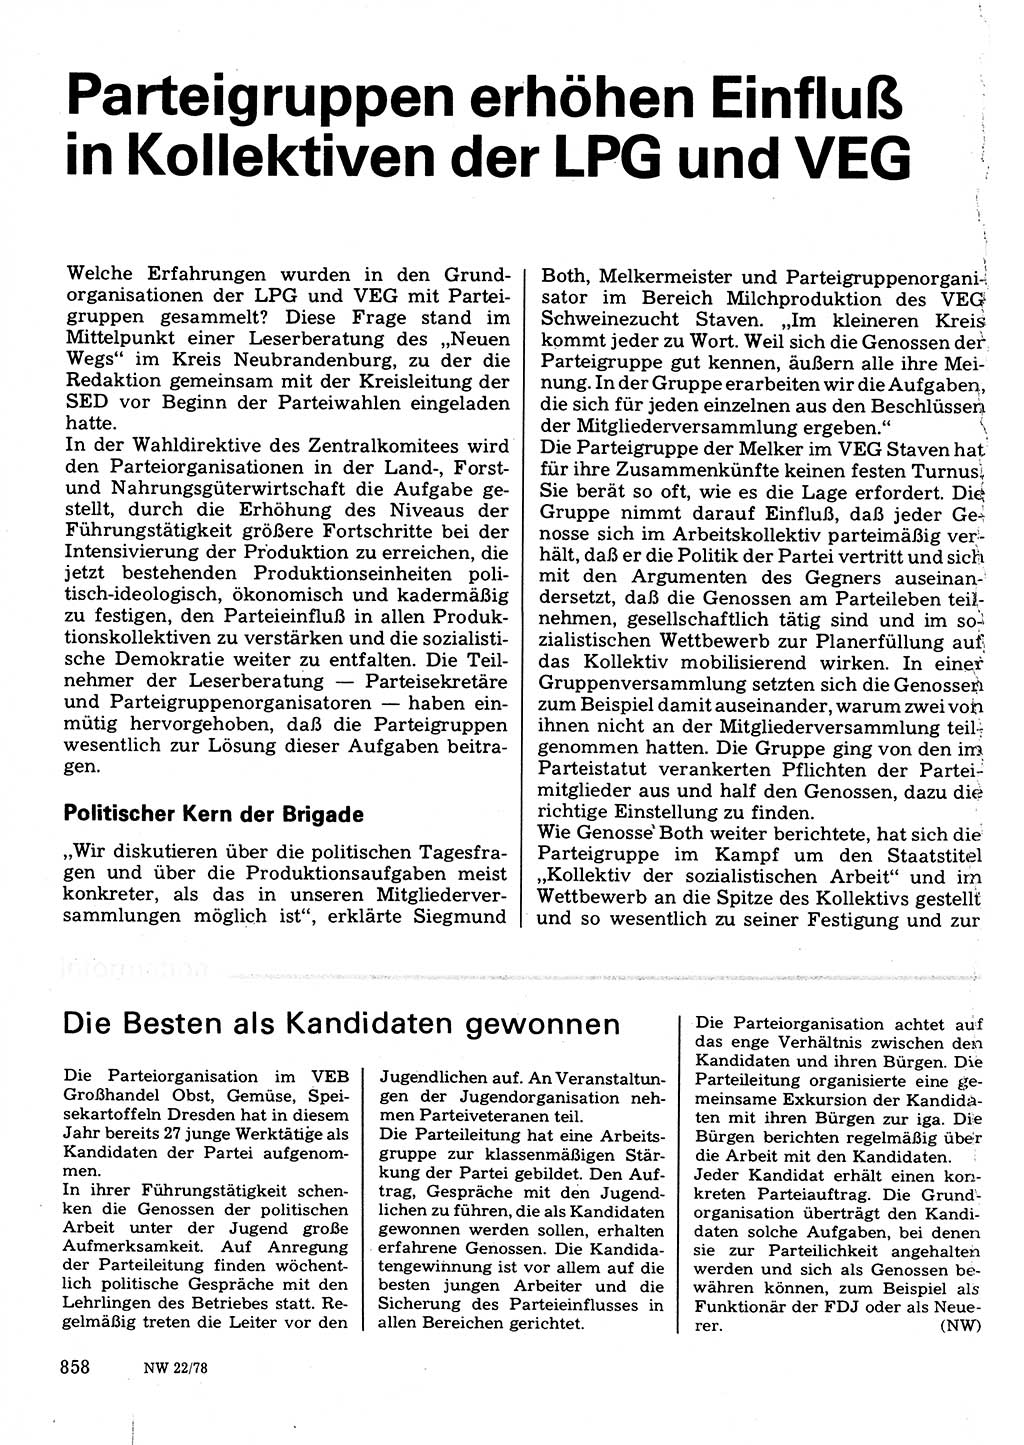 Neuer Weg (NW), Organ des Zentralkomitees (ZK) der SED (Sozialistische Einheitspartei Deutschlands) für Fragen des Parteilebens, 33. Jahrgang [Deutsche Demokratische Republik (DDR)] 1978, Seite 858 (NW ZK SED DDR 1978, S. 858)